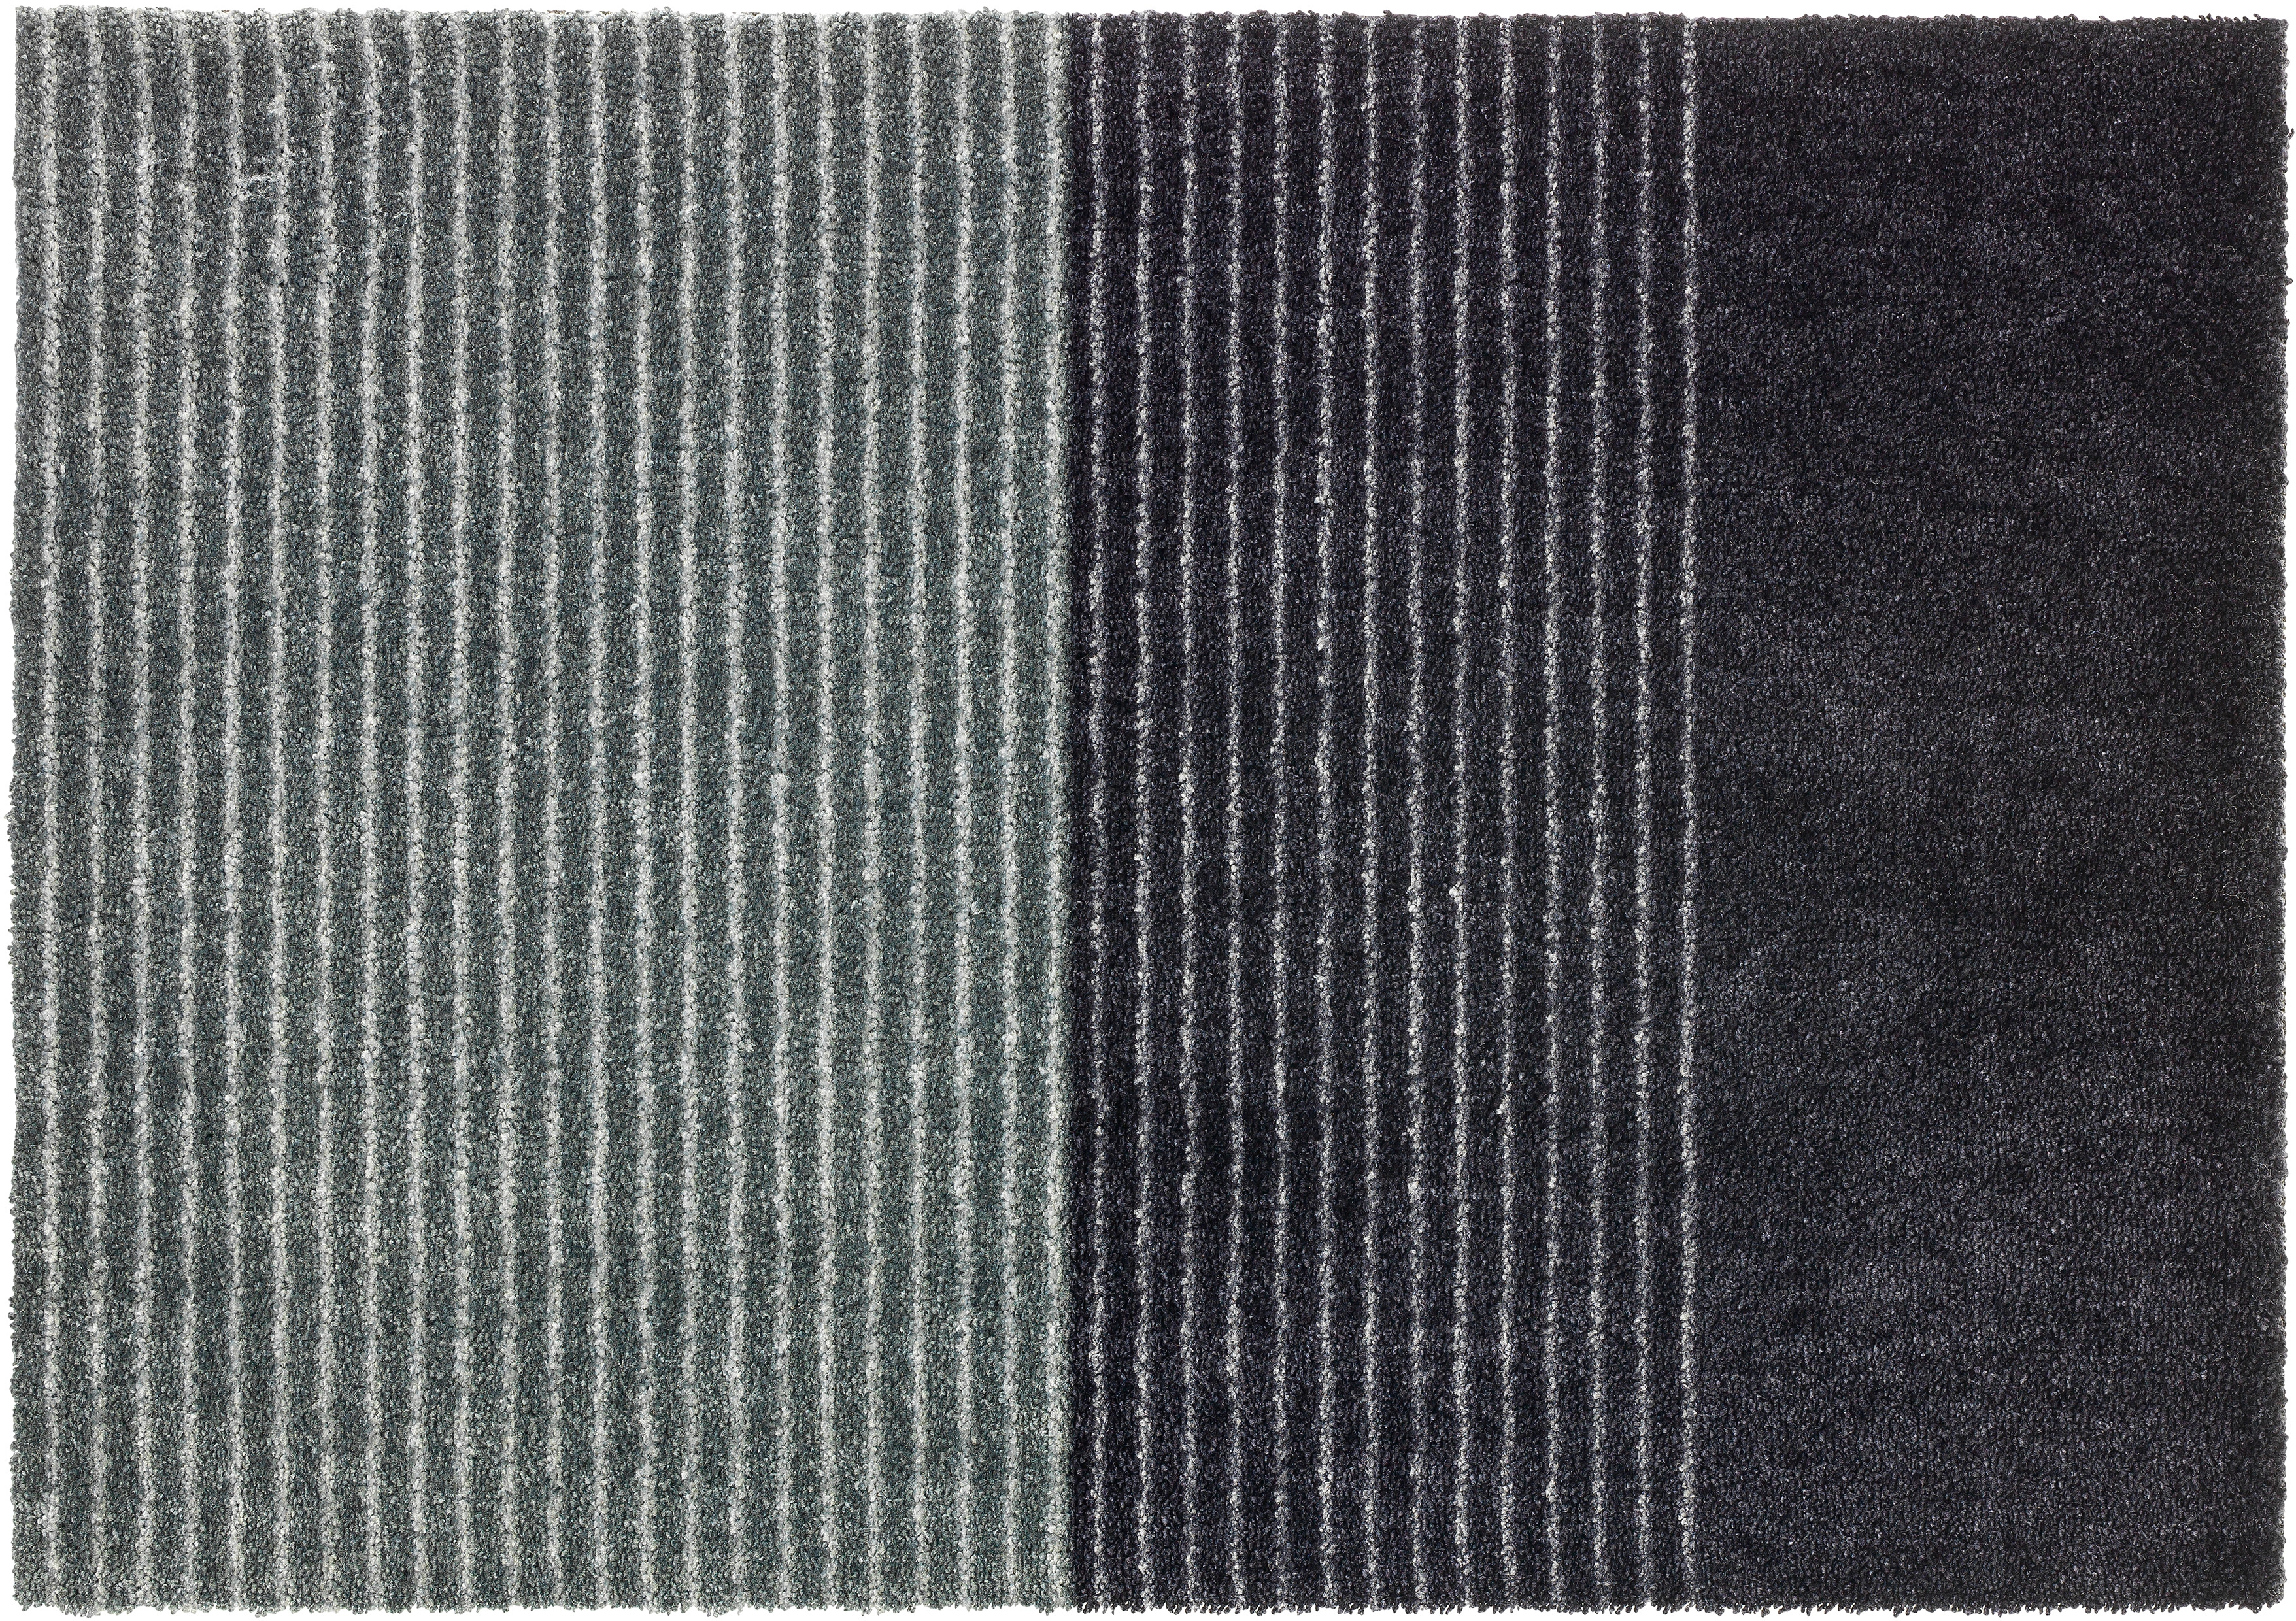 Schöner Wohnen Sauberlaufmatte Manhattan 50 cm x 70 cm Streifen  Anthrazit-Grau kaufen bei OBI